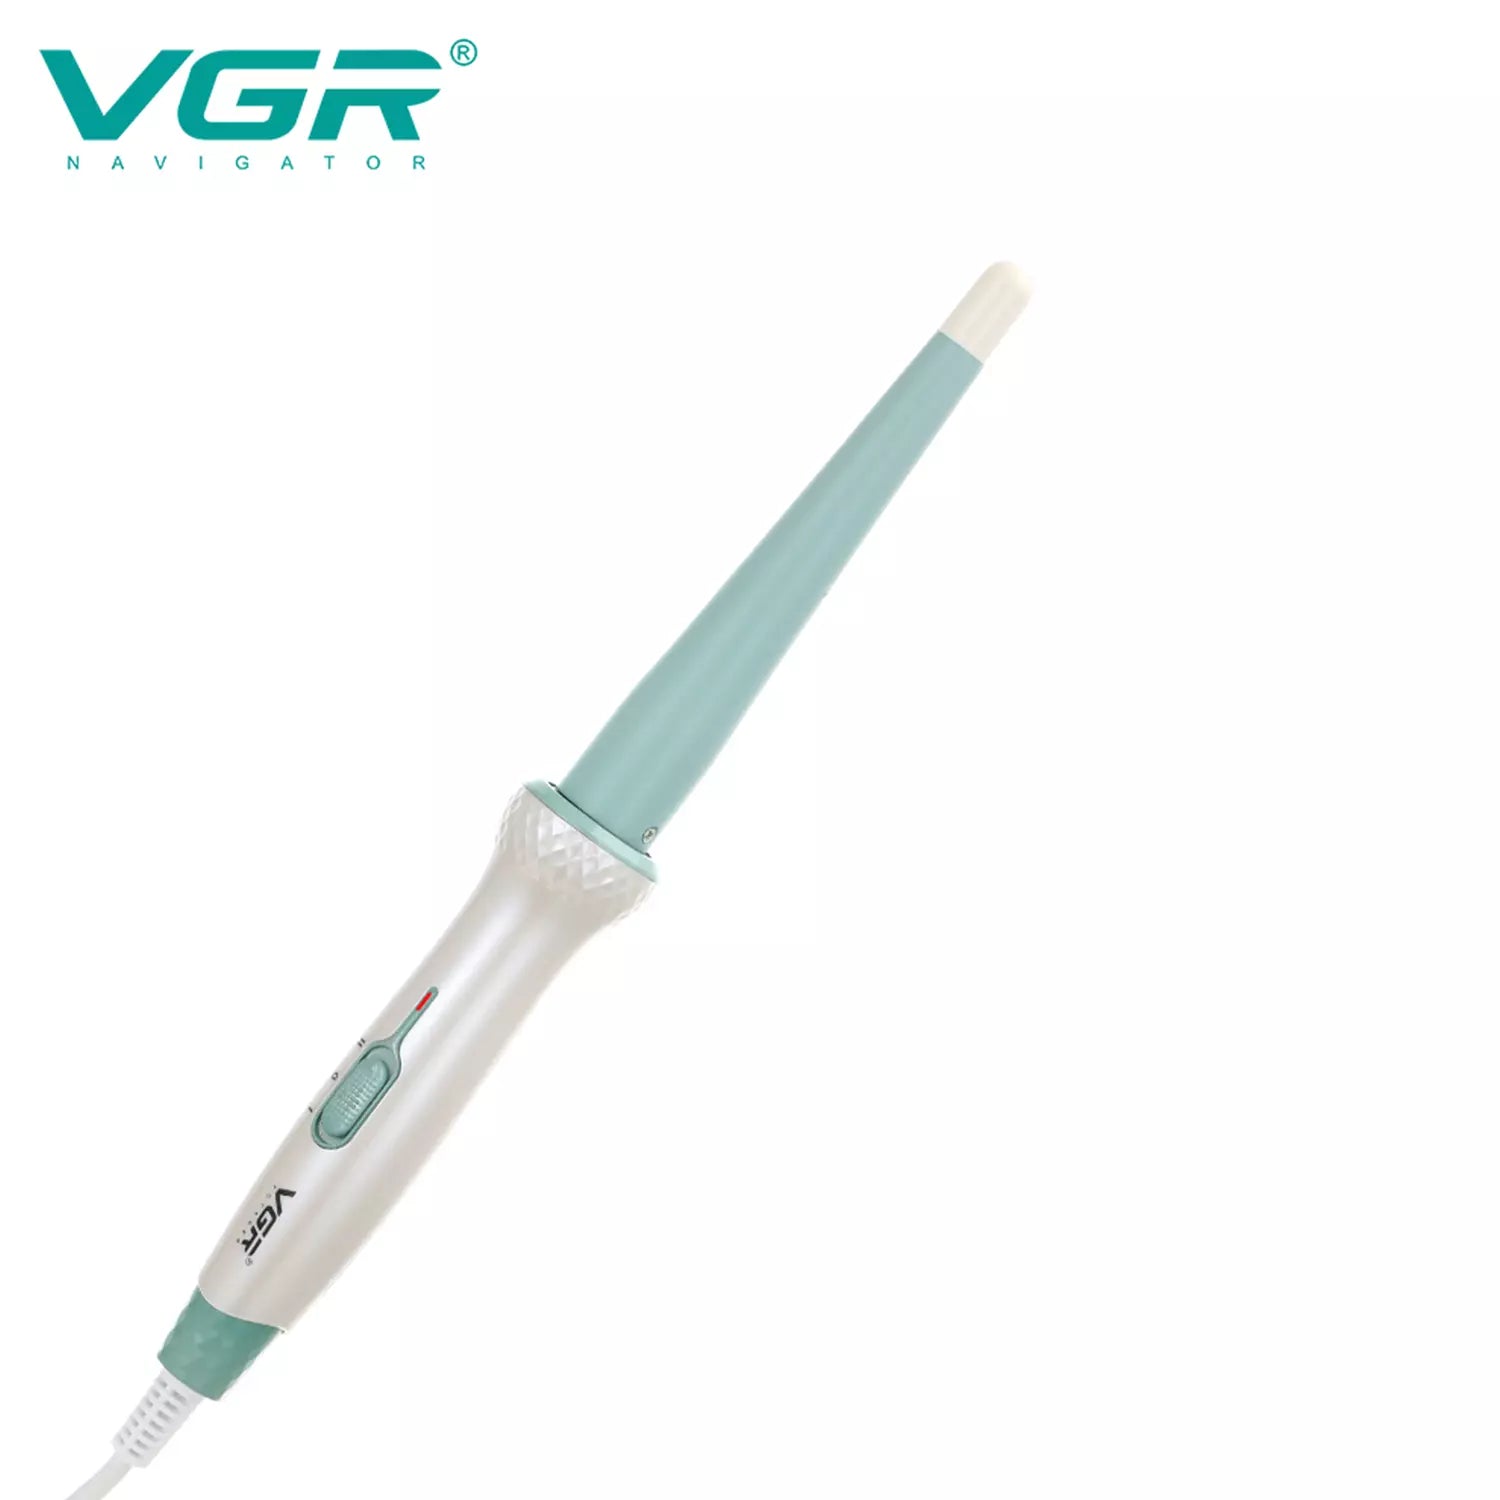 VGR V-596 Hair Curler Iron For Women, Green